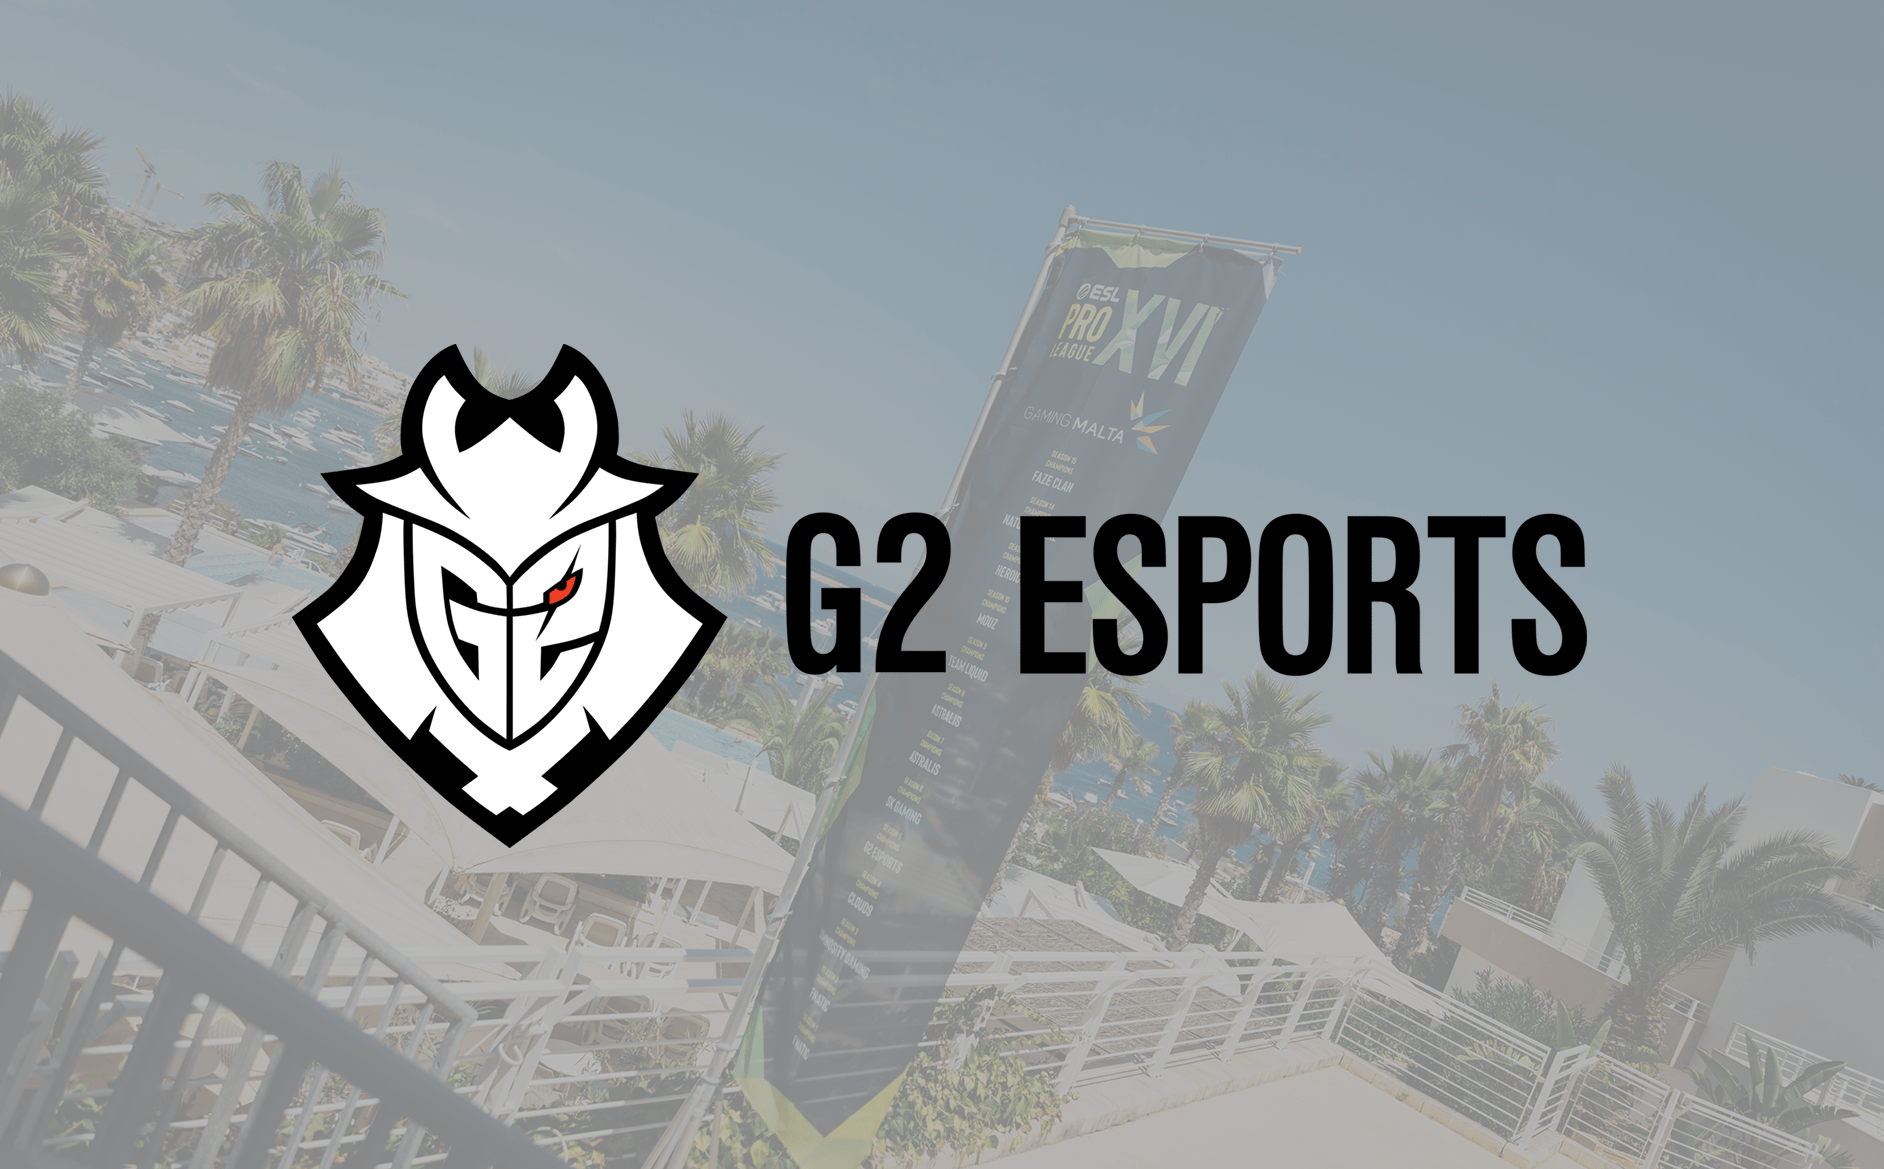 G2 Esports announces gambling partner M88 Mansion, Rocket League partner Stride